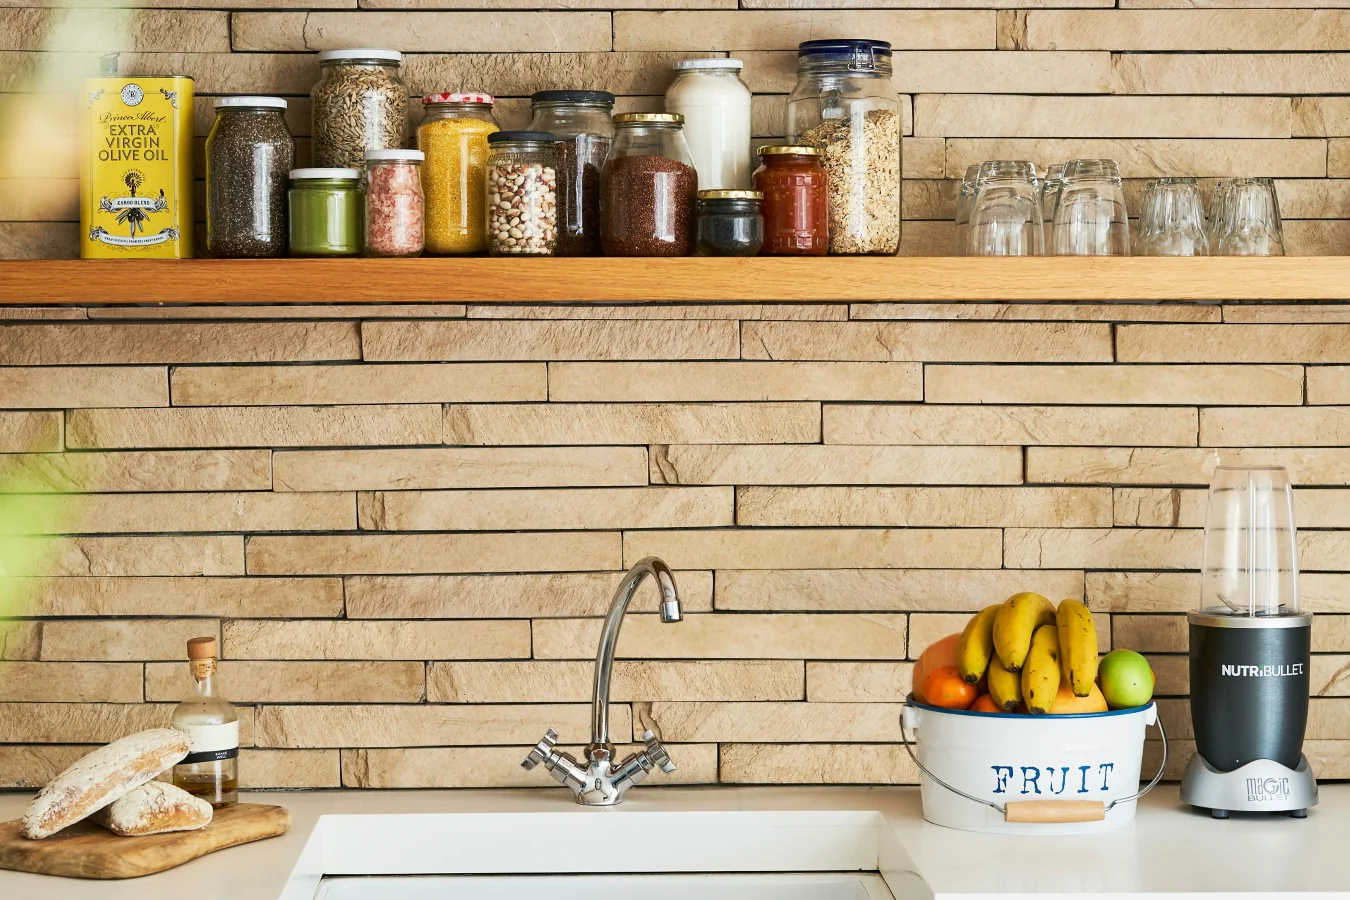 Otwarta półka, ściany z naturalnego kamienia i proste pojemniki - to elementy prowansalskiej kuchni.